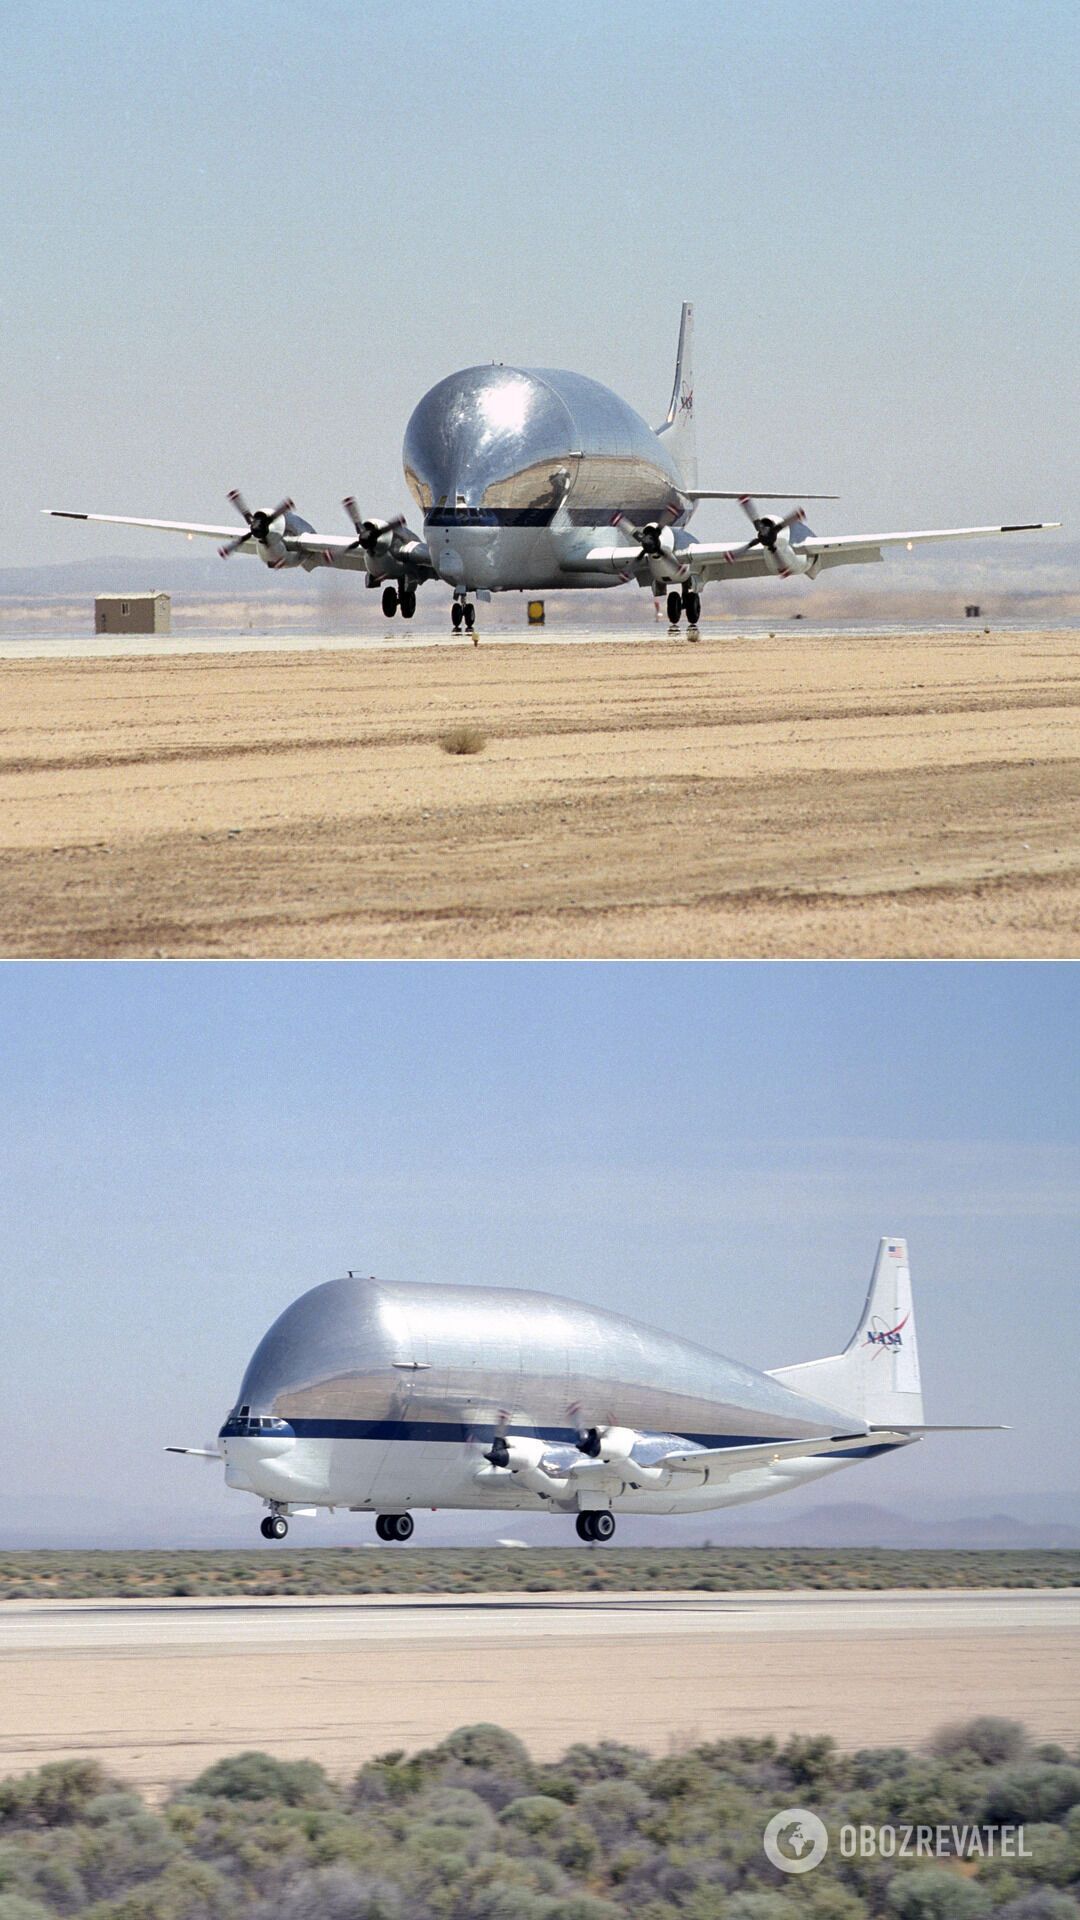 Super Guppy – транспортный самолет для перевозки негабаритных грузов от американской компании Aero Spacelines. Был выпущен в количестве пяти экземпляров в двух модификациях. Первый полет состоялся в августе 1965 года. Единственный летающий "воздушный кит" принадлежит NASA и эксплуатируется для доставки крупногабаритных изделий для МКС